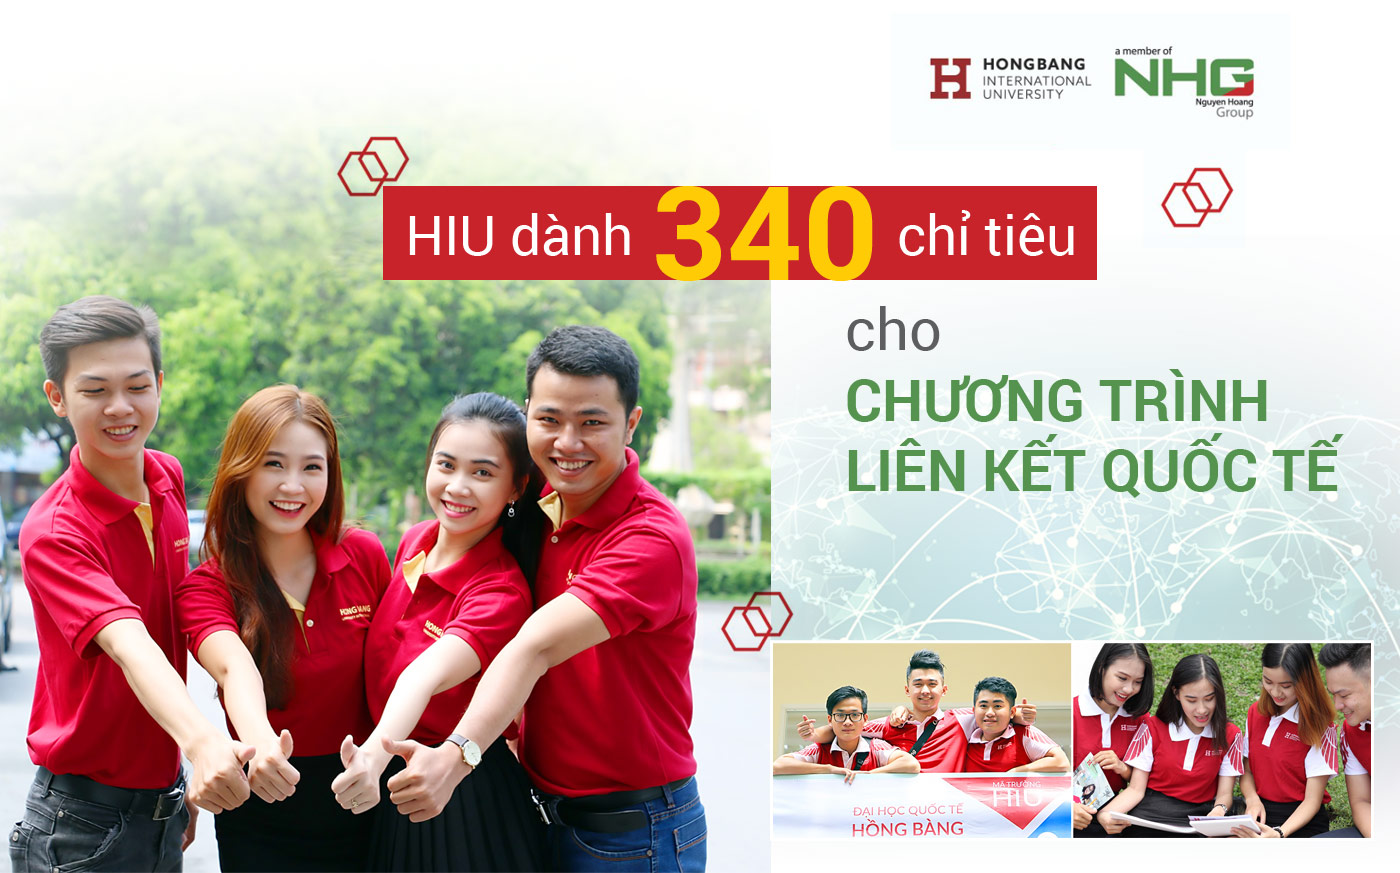 HIU dành 340 chỉ tiêu cho chương trình liên kết quốc tế - Ảnh 1